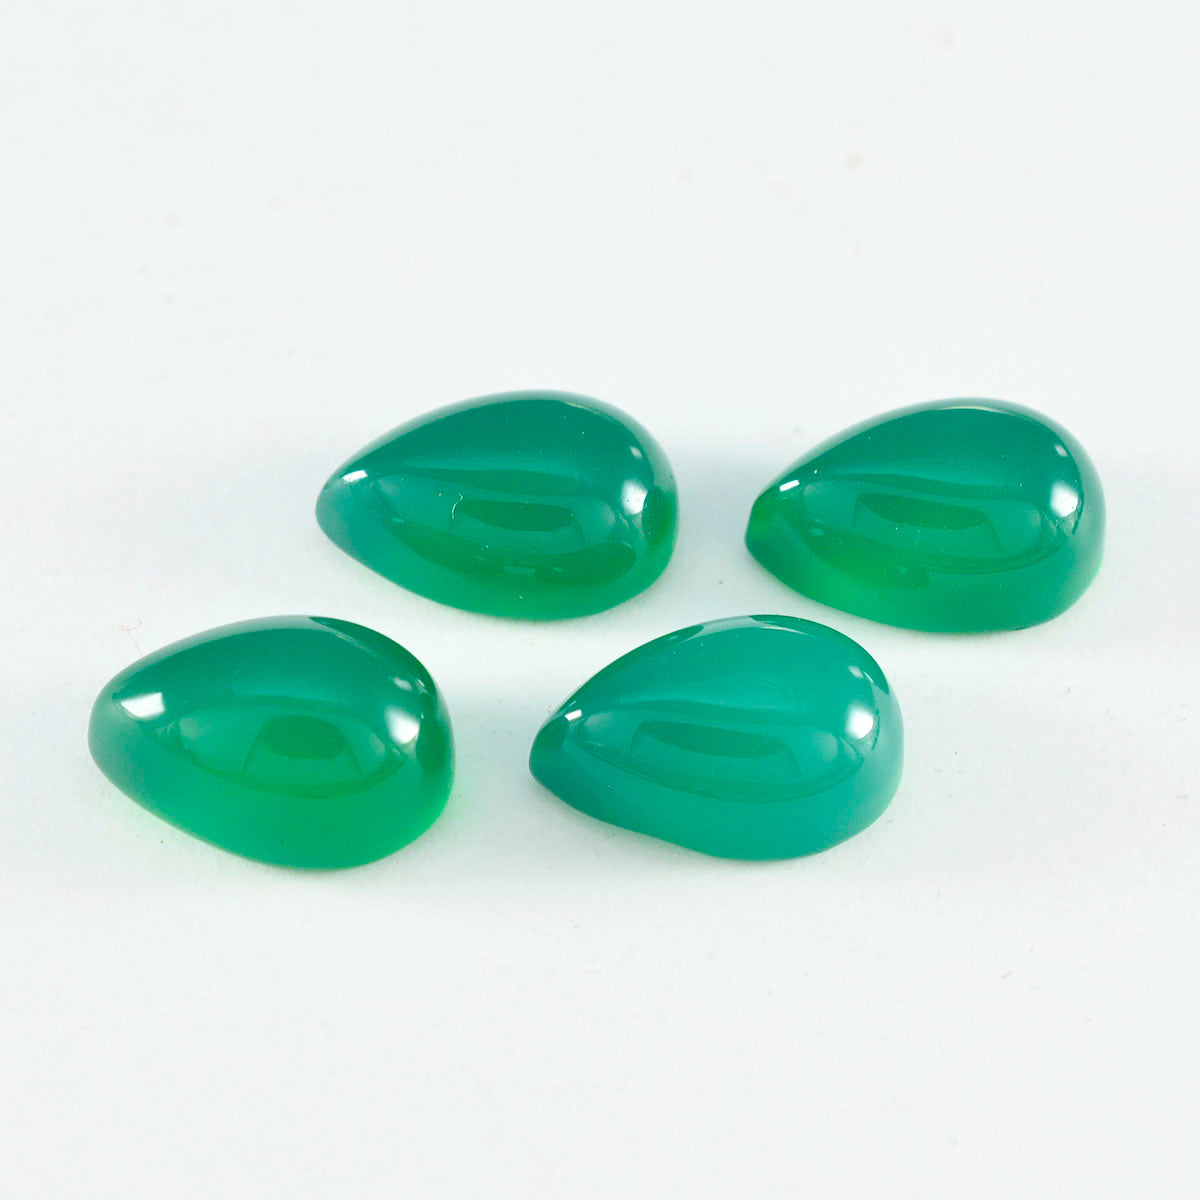 Riyogems 1 Stück grüner Onyx-Cabochon, 8 x 12 mm, Birnenform, hübscher, hochwertiger, loser Edelstein